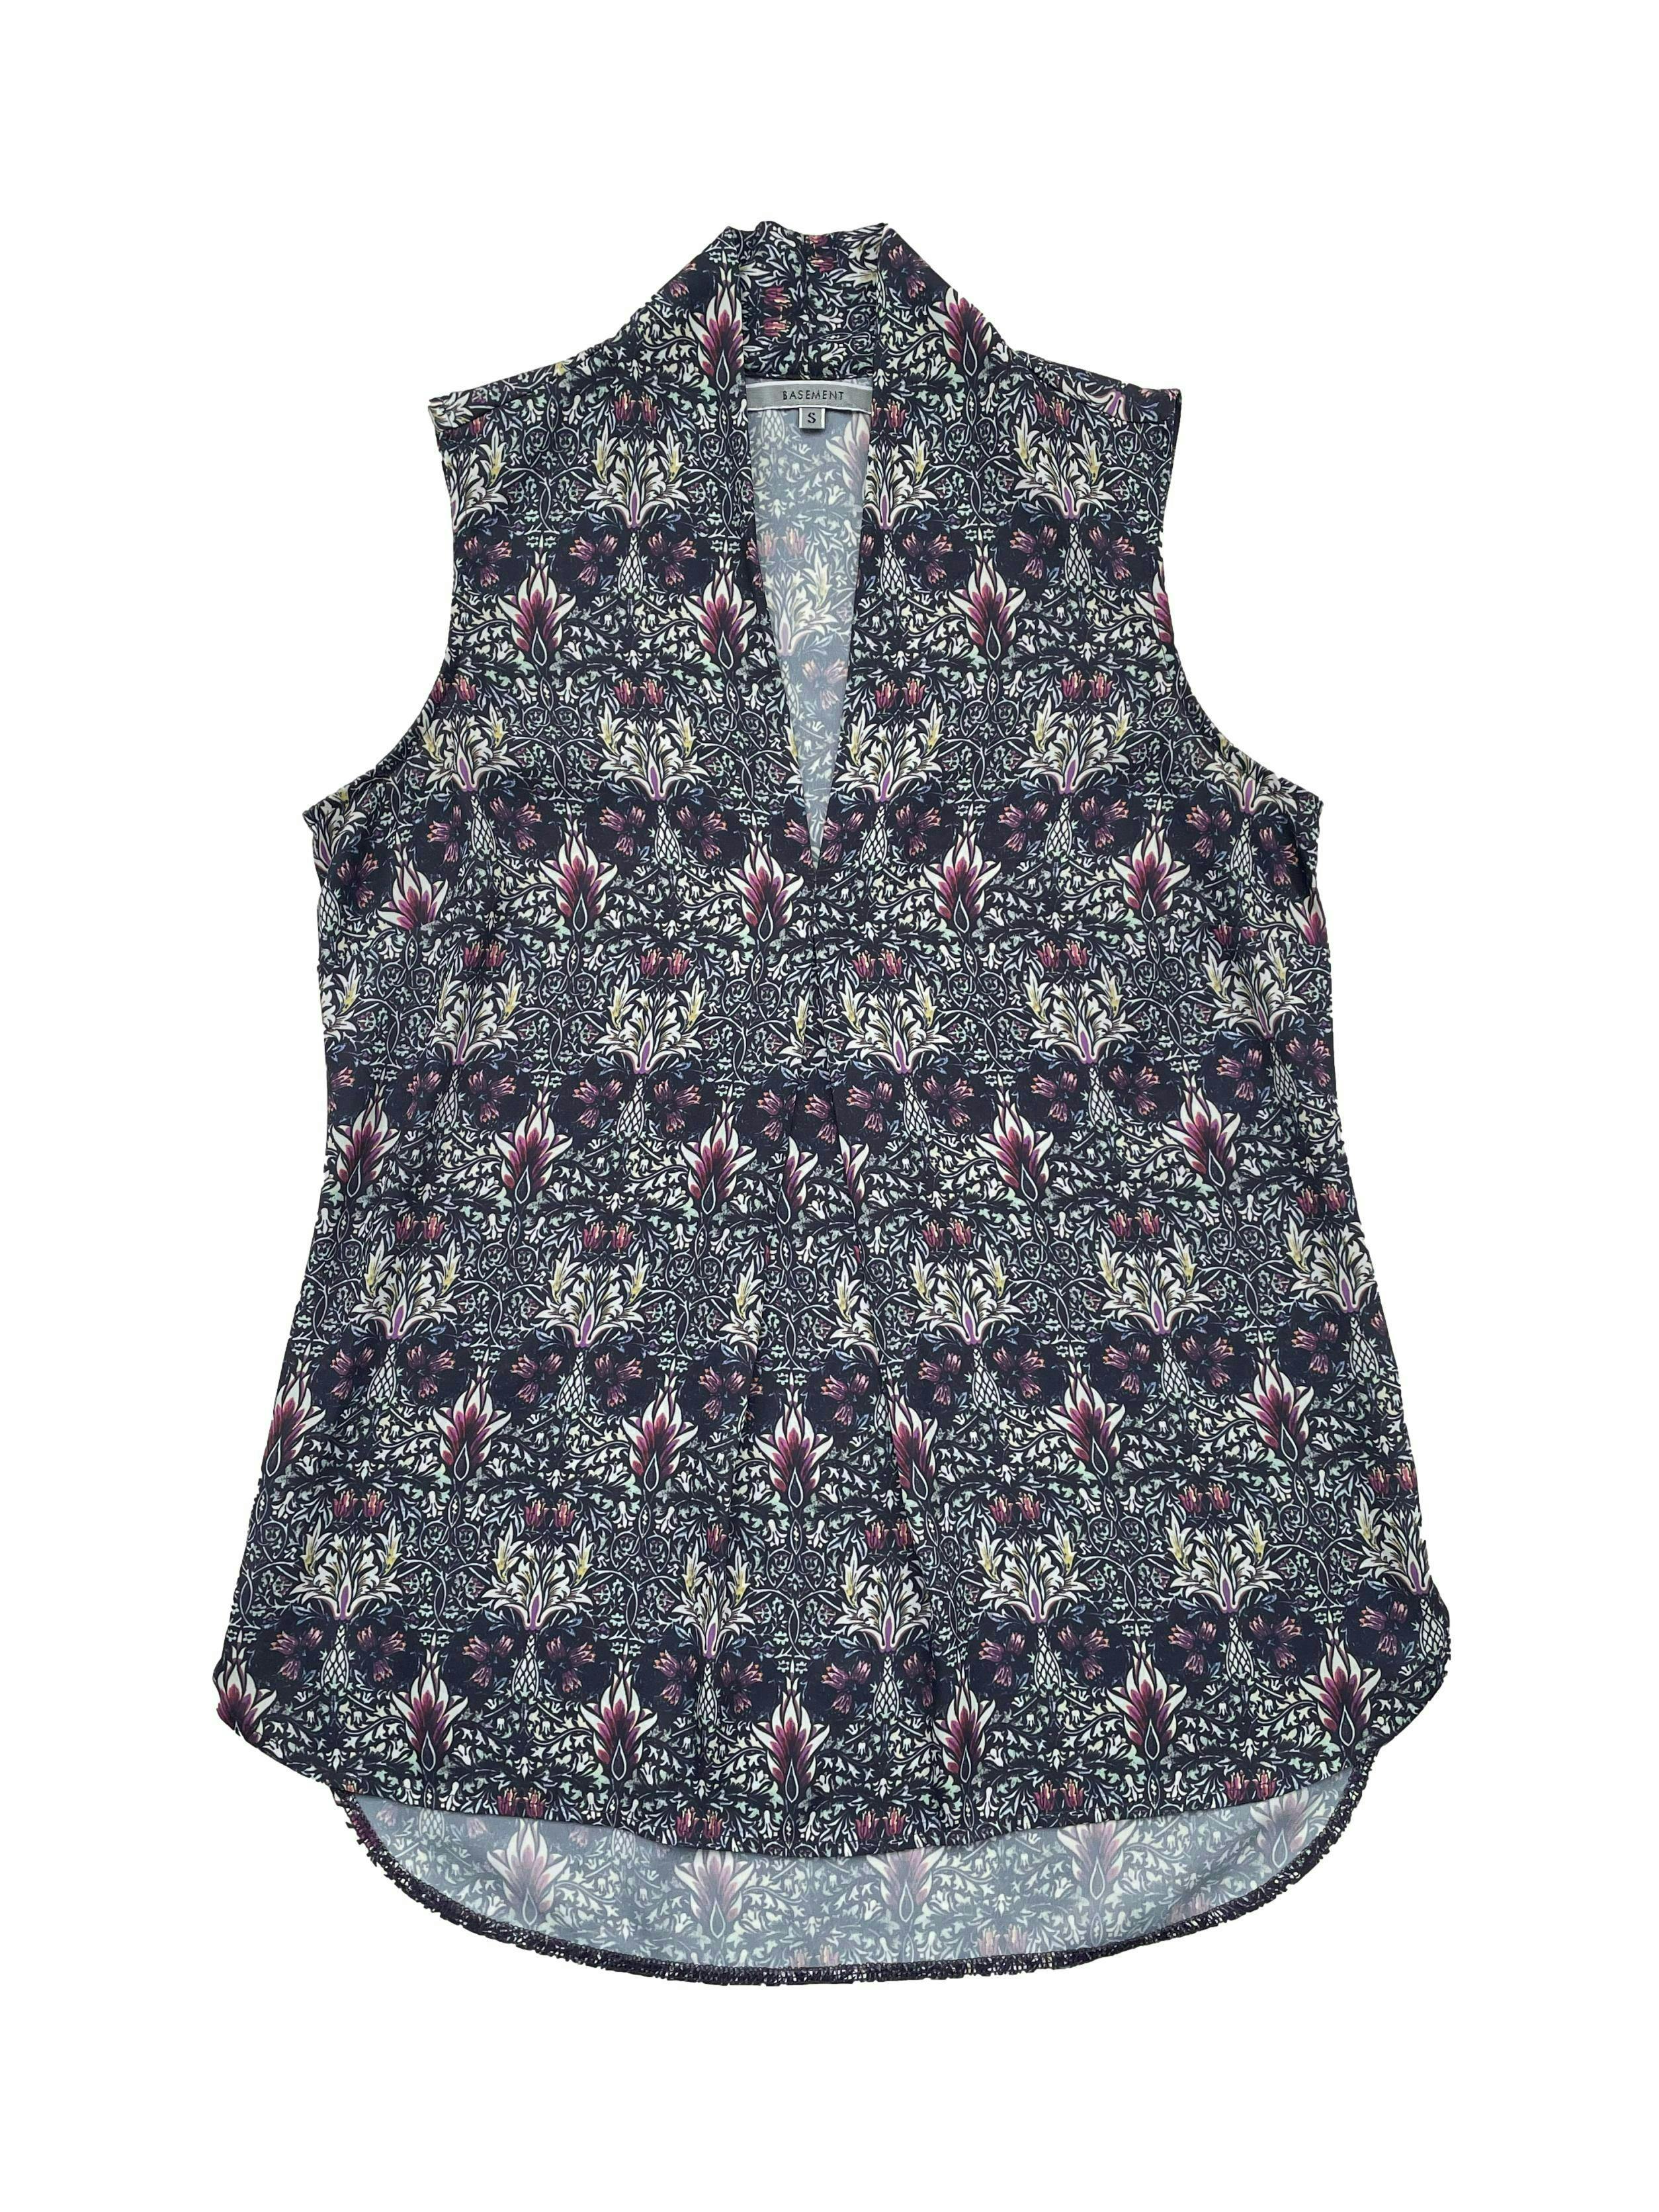 Blusa Basement morada con estampado floral, escote en V, pinzas y pliegue central. Busto 90cm, Largo 60/64cm.